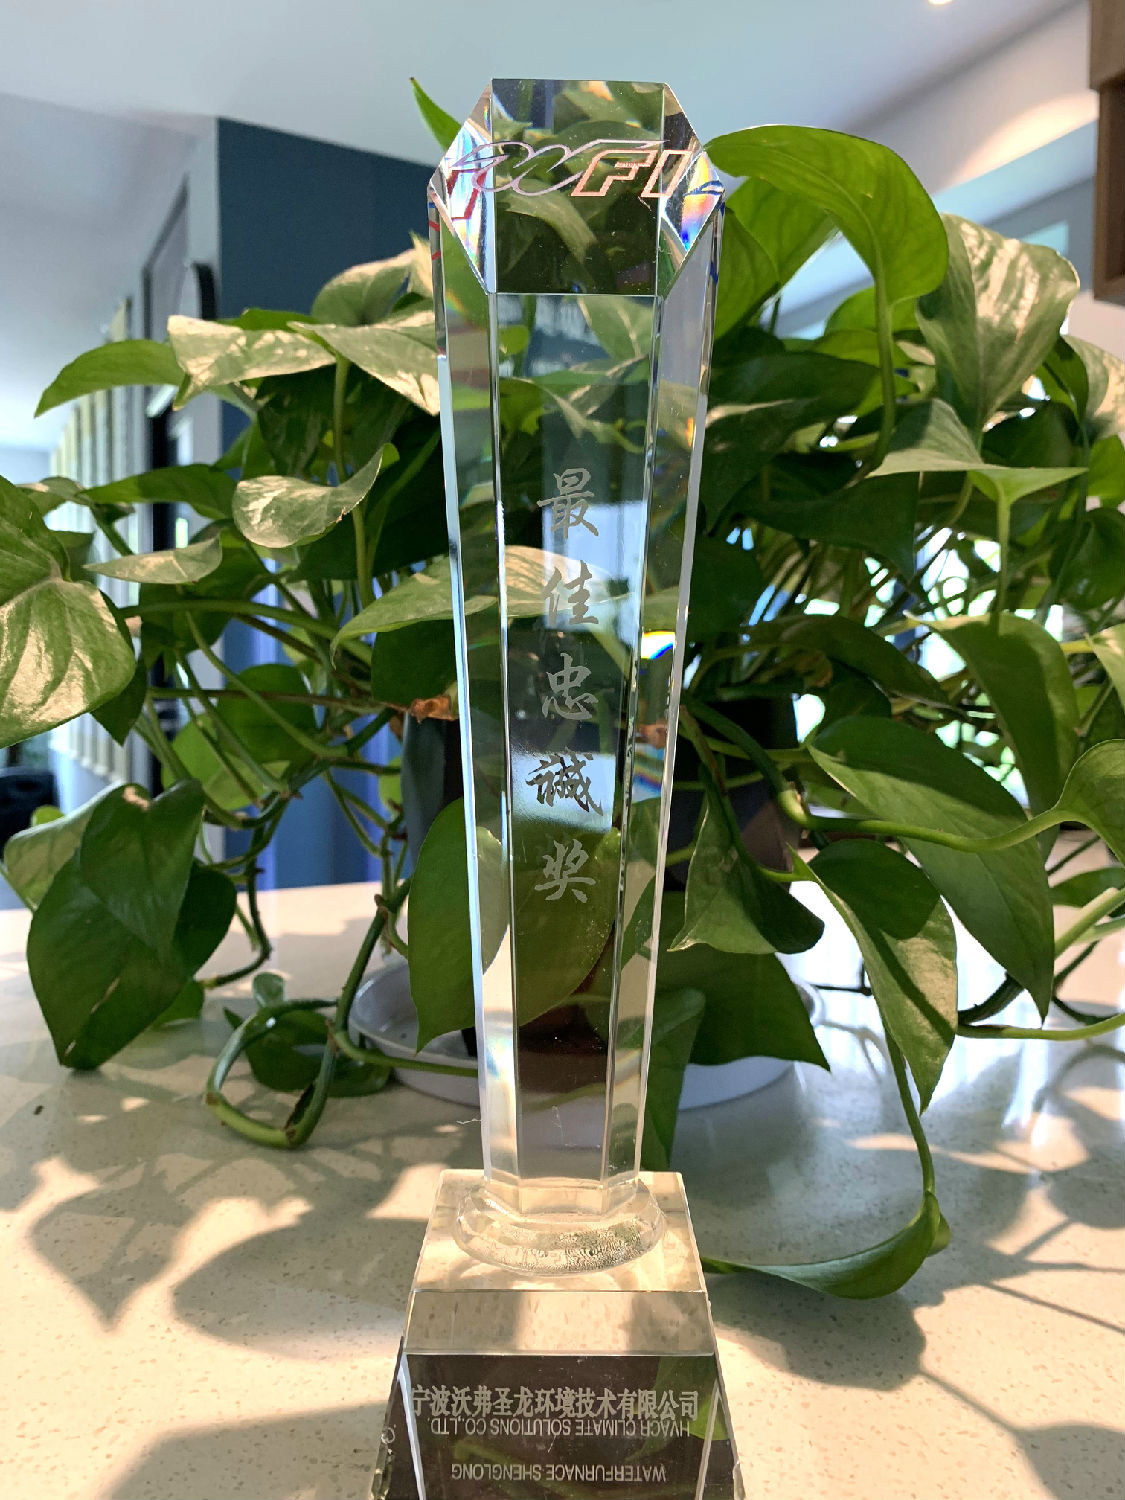 日新环境荣获WFI地源热泵中央空调颁发“最佳忠诚奖”